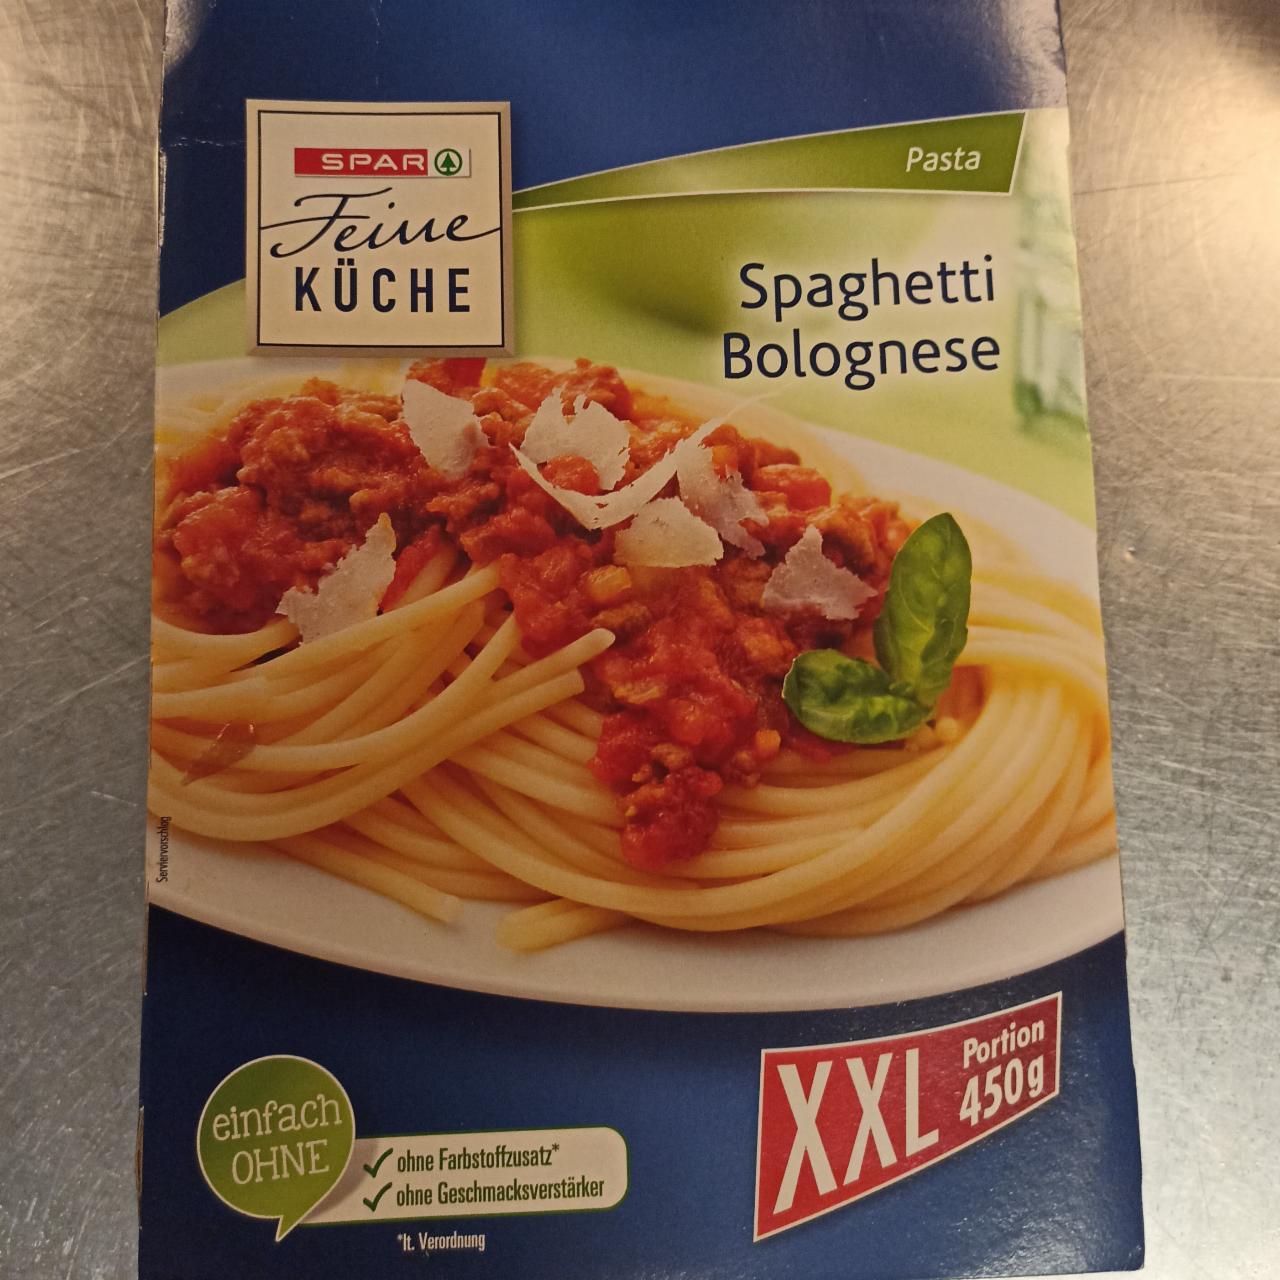 Fotografie - Spaghetti Bolognese Spar feine küche